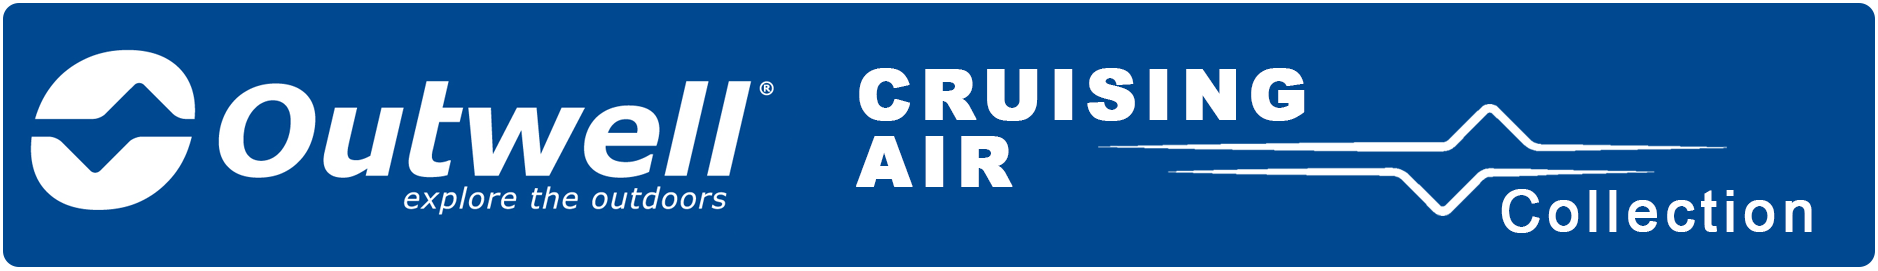 Air Cruising Collection